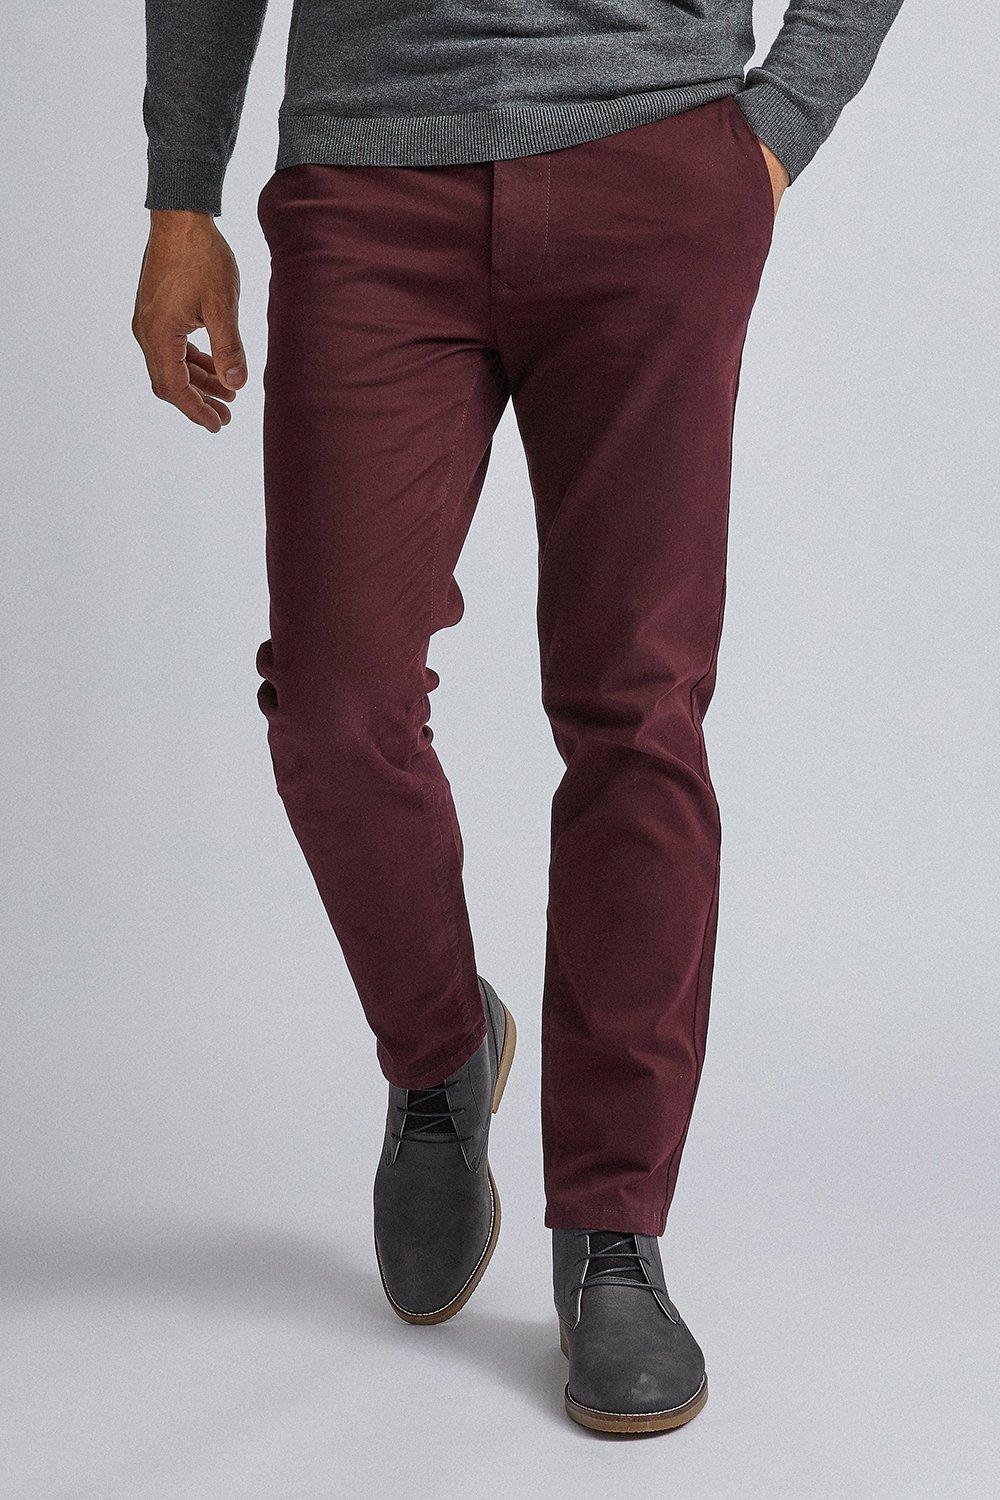 Trousers | Slim Fit Burgundy Chino | Burton